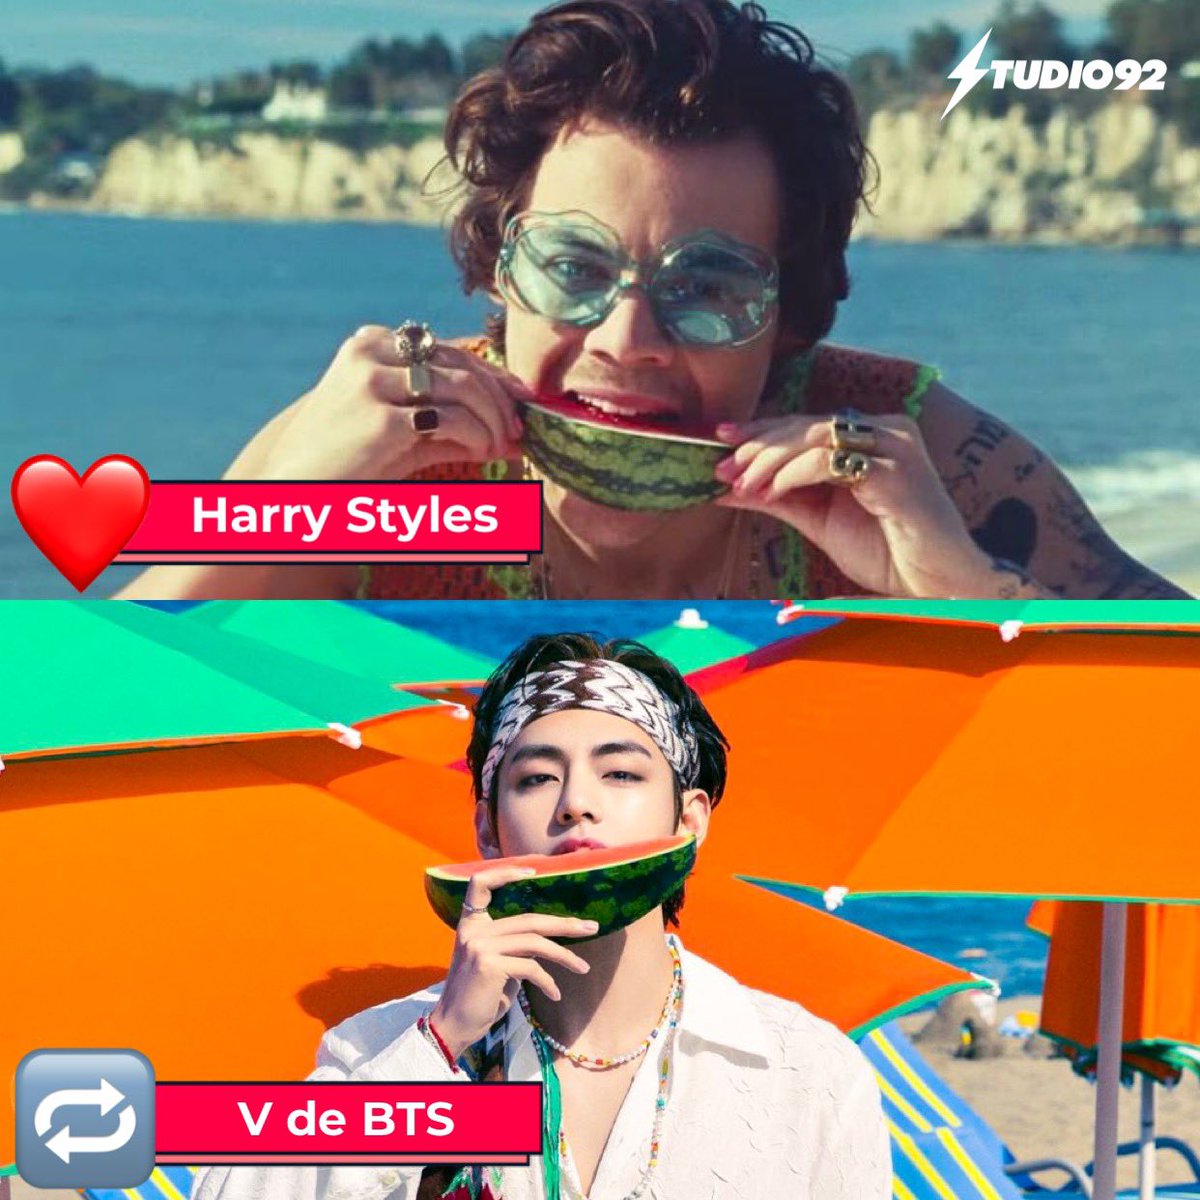 ¿Si tienes que comer sandía 🍉 con alguno de estos dos cantantes? 😂 ¿Con quién sería #HarryStyles ❤️(corazón) o #V de #BTS 🔁(retweet)? COMENTA 😱